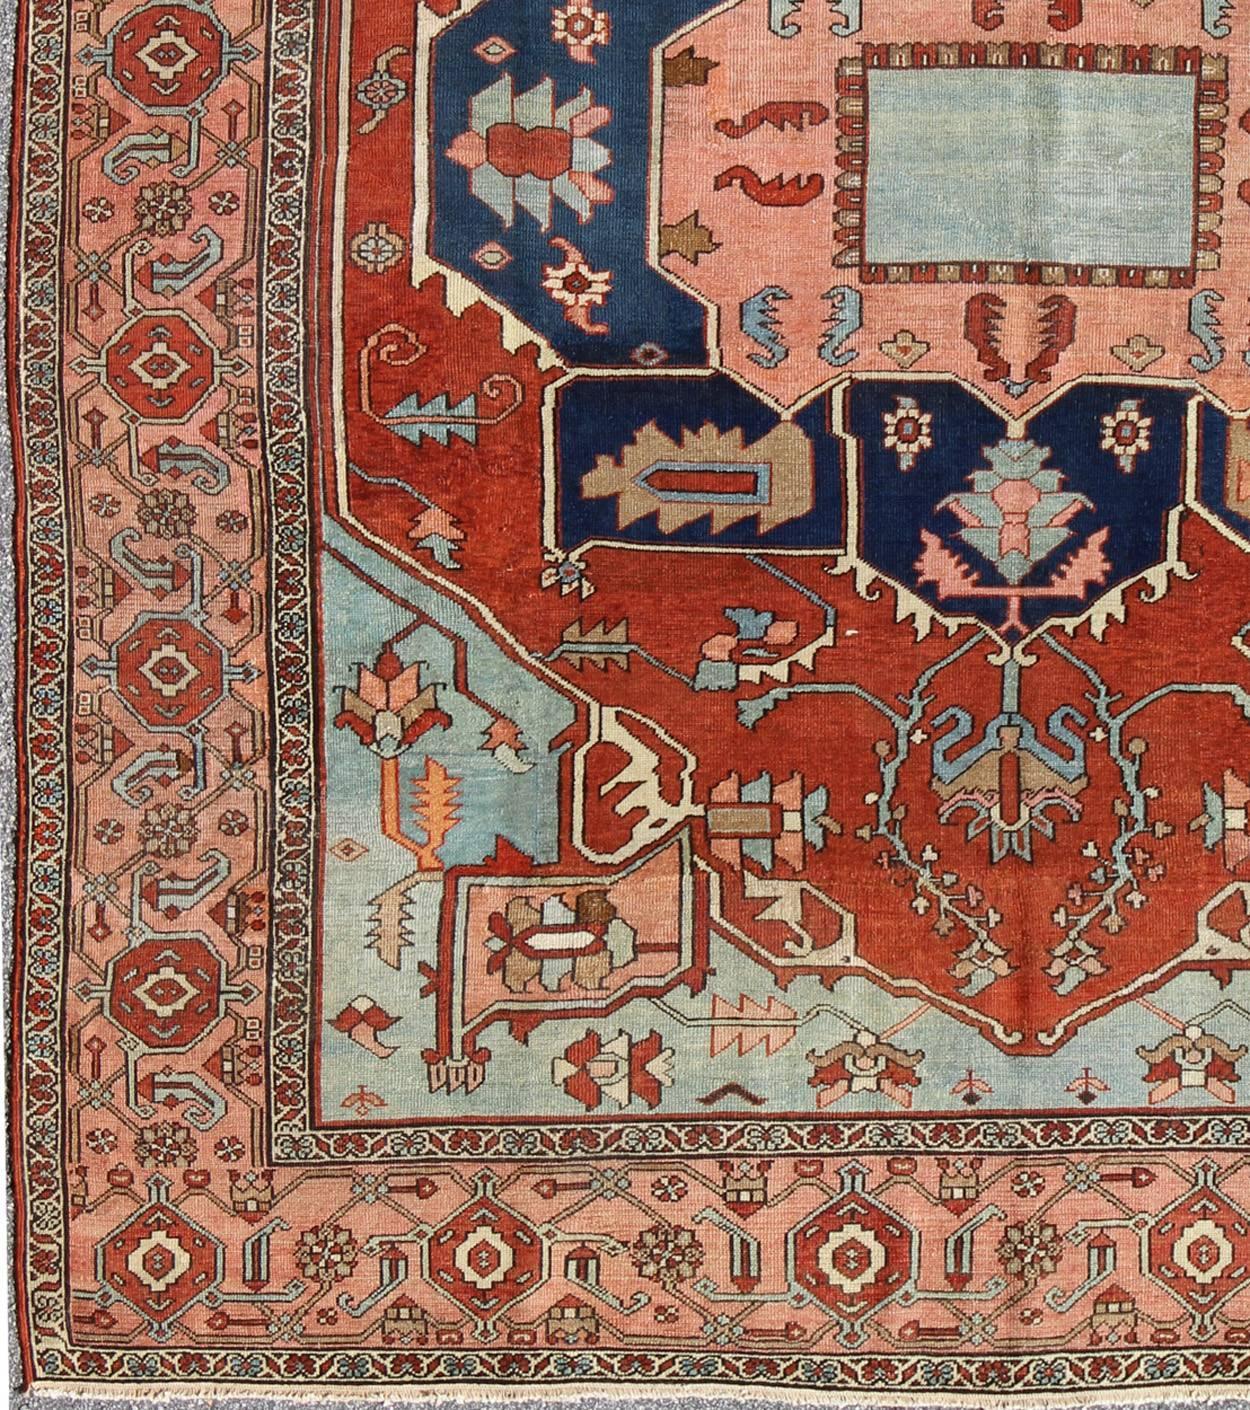 Ancien tapis persan Serapi avec détails arabes et bordure en rinceaux de vigne Keivan Woven Arts / Rug / KBE-20, pays d'origine / type : Iran /Heriz, circa 1910. 
Mesures : 9'7 x 11'4
Les tapis Serapi sont connus pour être les plus beaux tapis